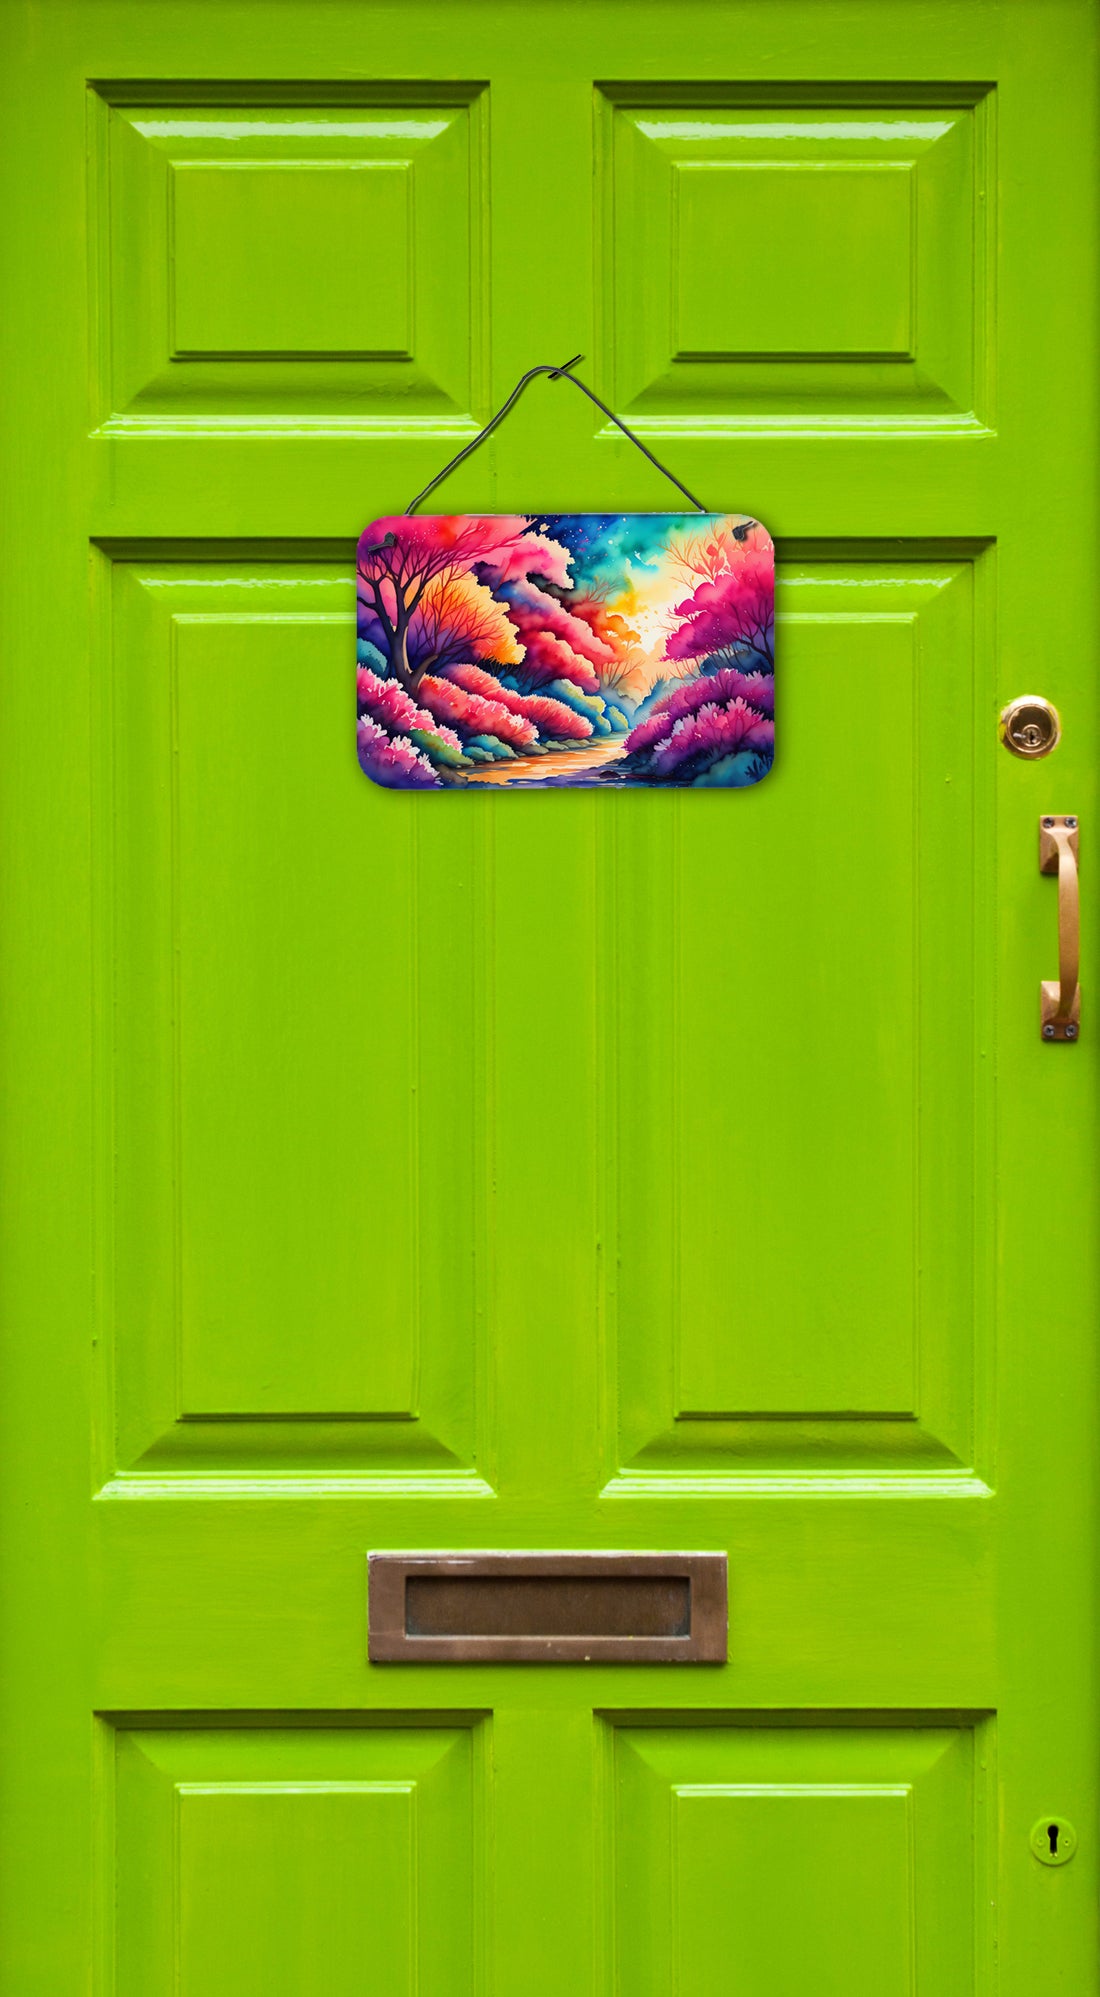 Azaleas in Color Wall or Door Hanging Prints